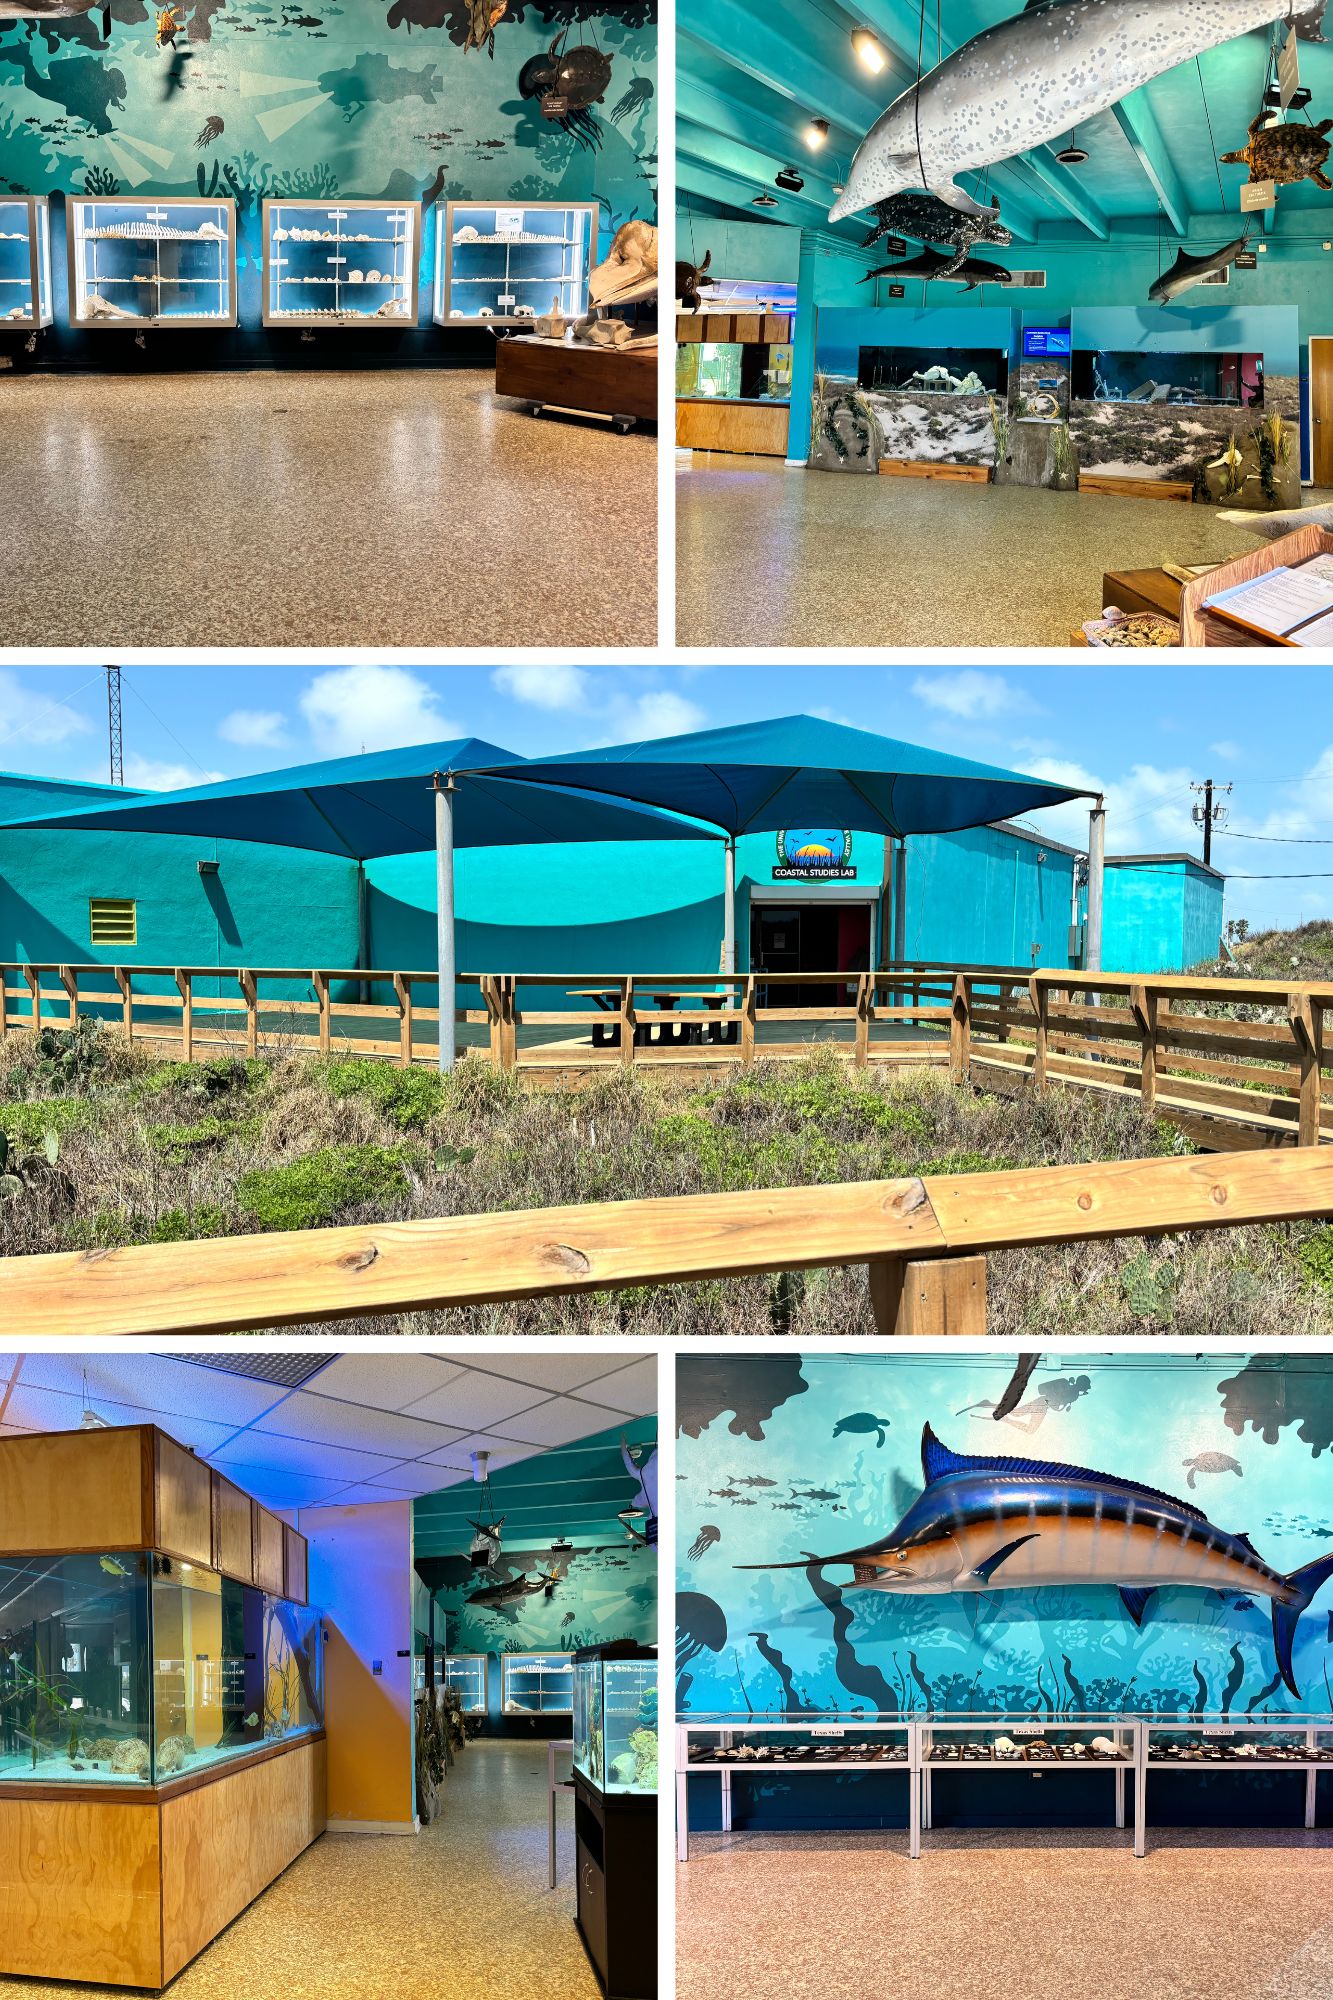 csl collage of aquarium and museum exhibits